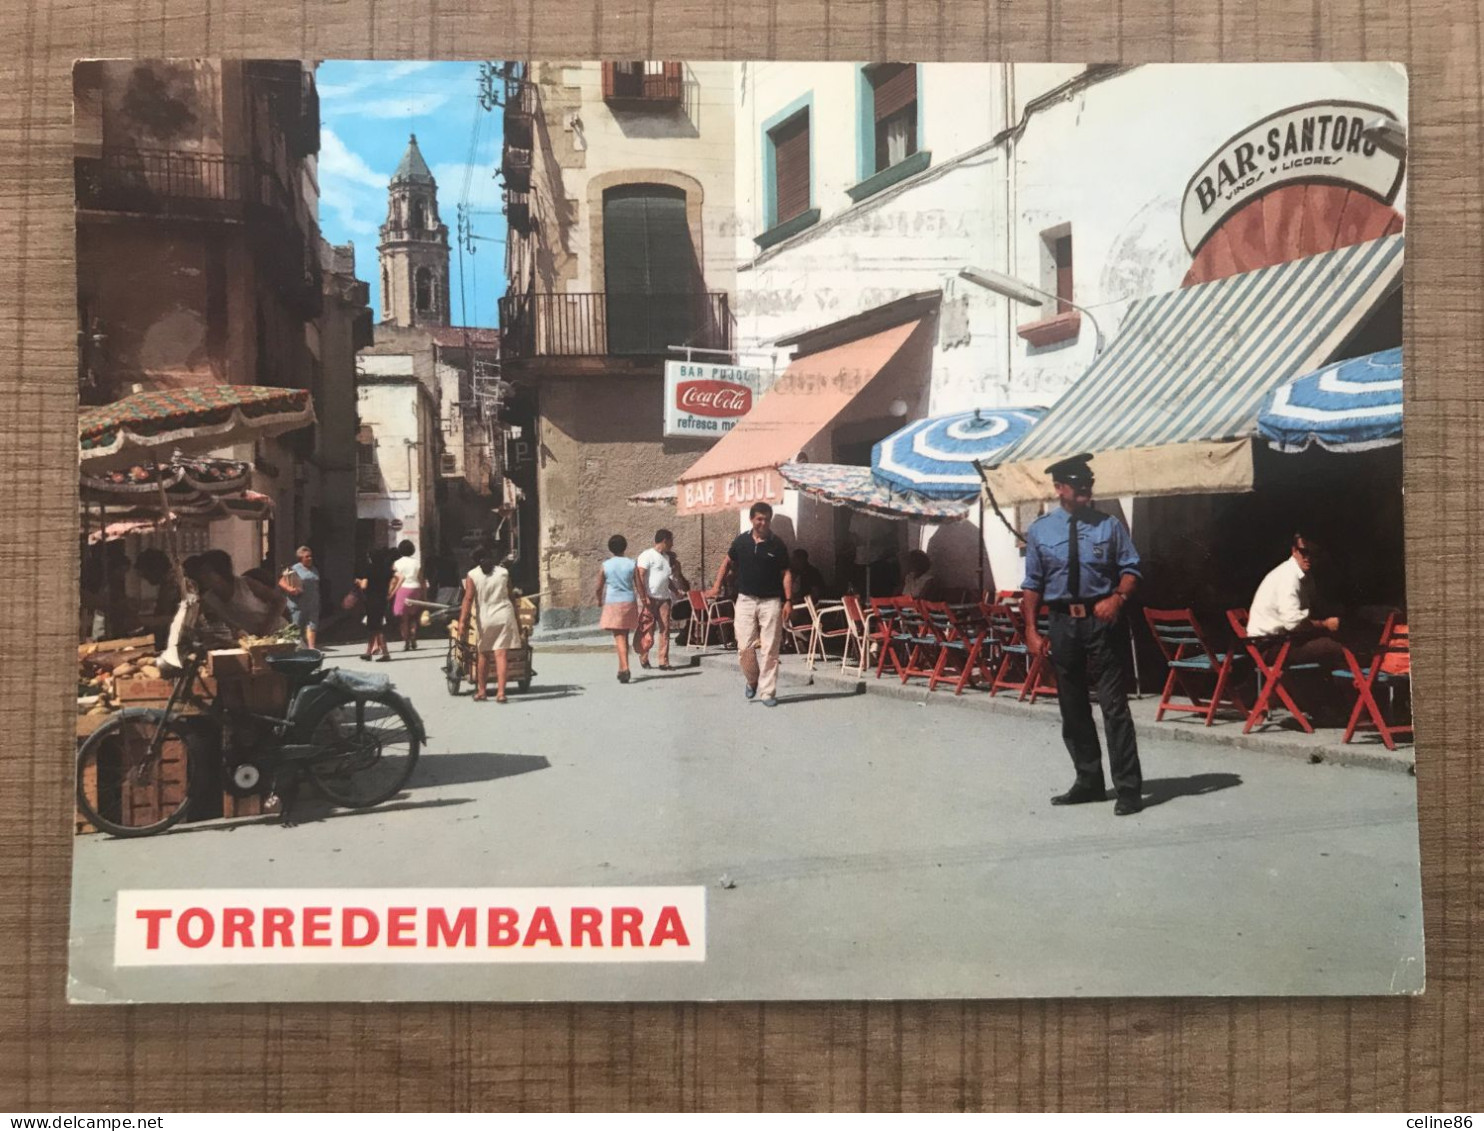  COSTA DORADA TARRAGONA TORREDEMBARRA Plaza Generalisimo  - Tarragona